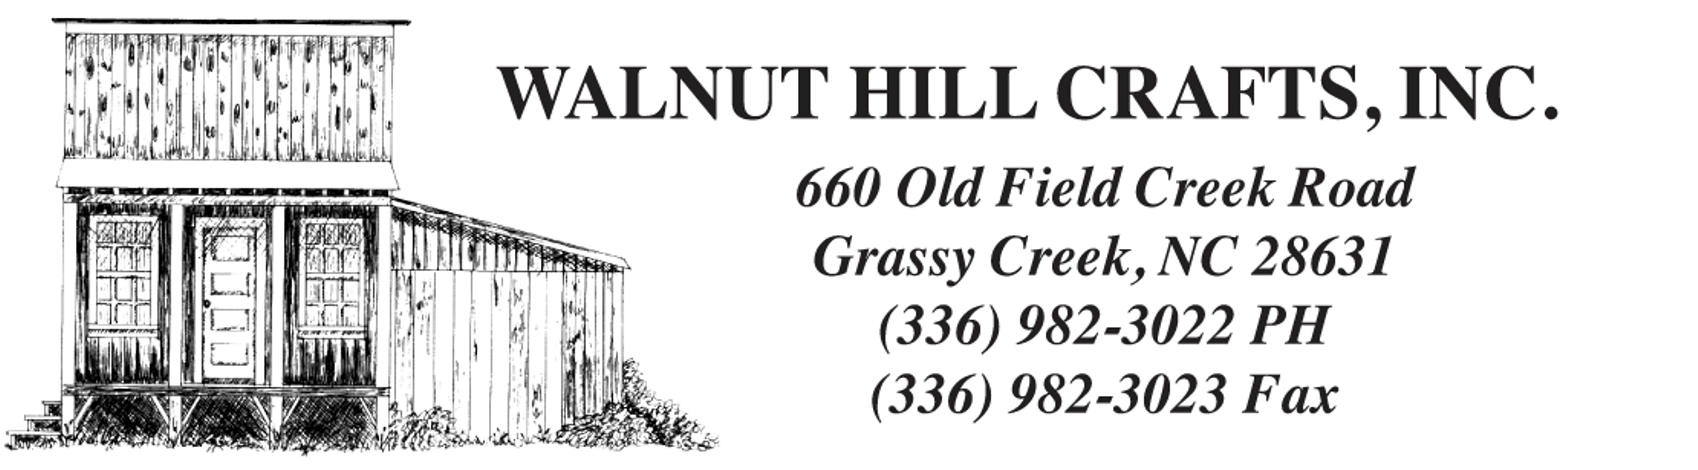 Walnut Hill Crafts, Inc.